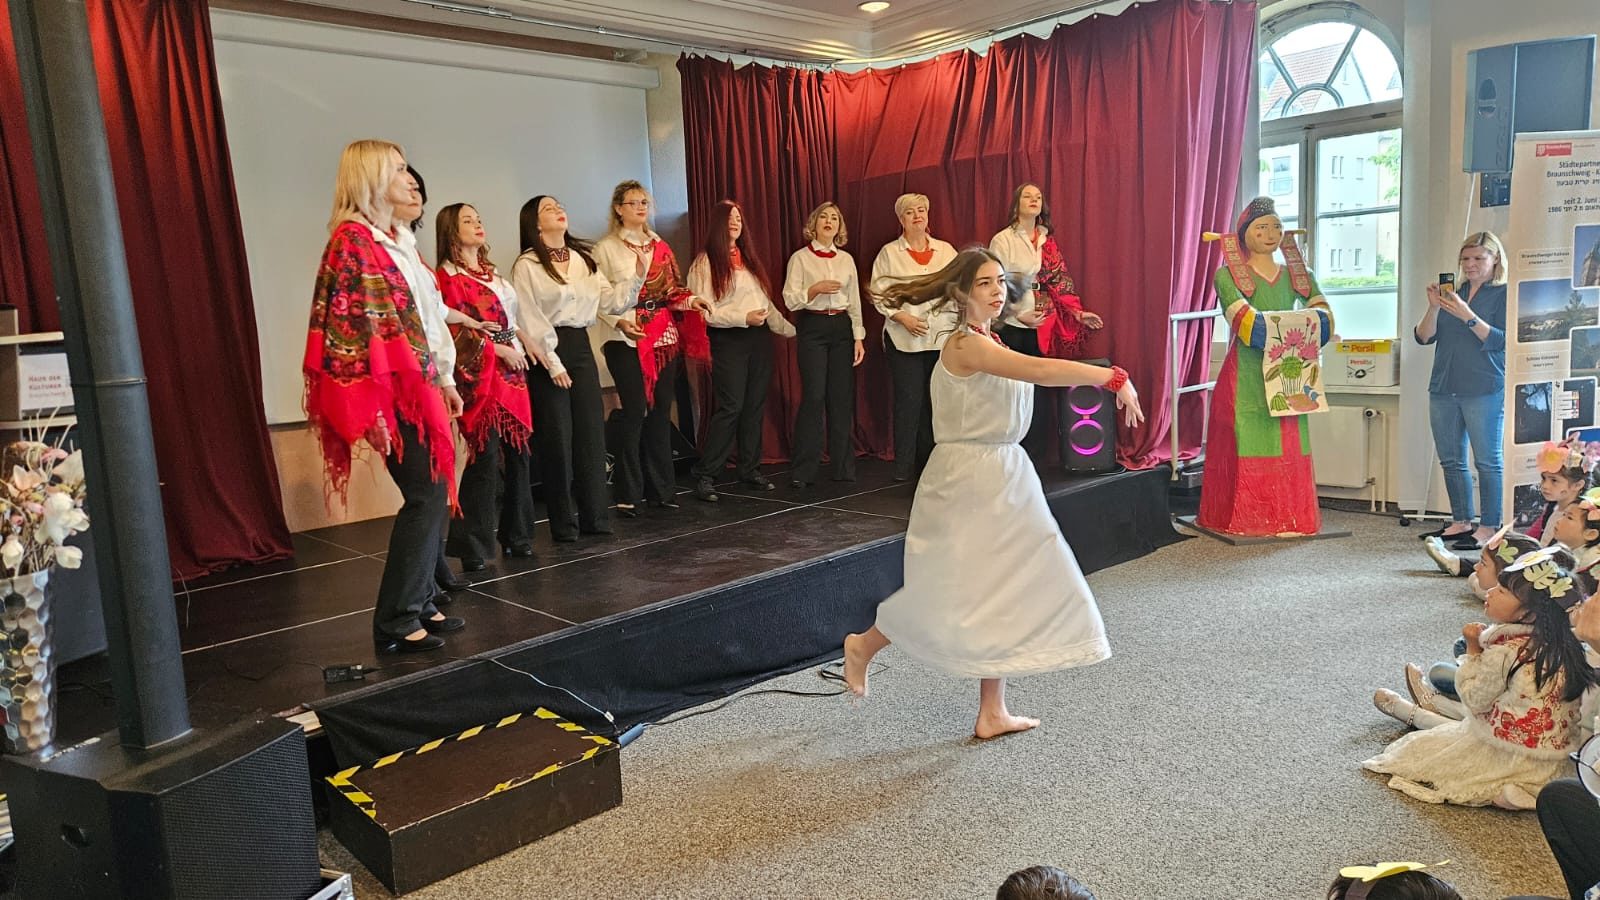 Gesangs- und Tanzdarbietung des Vereins Freie Ukraine Braunschweig e.V. (Wird bei Klick vergrößert)